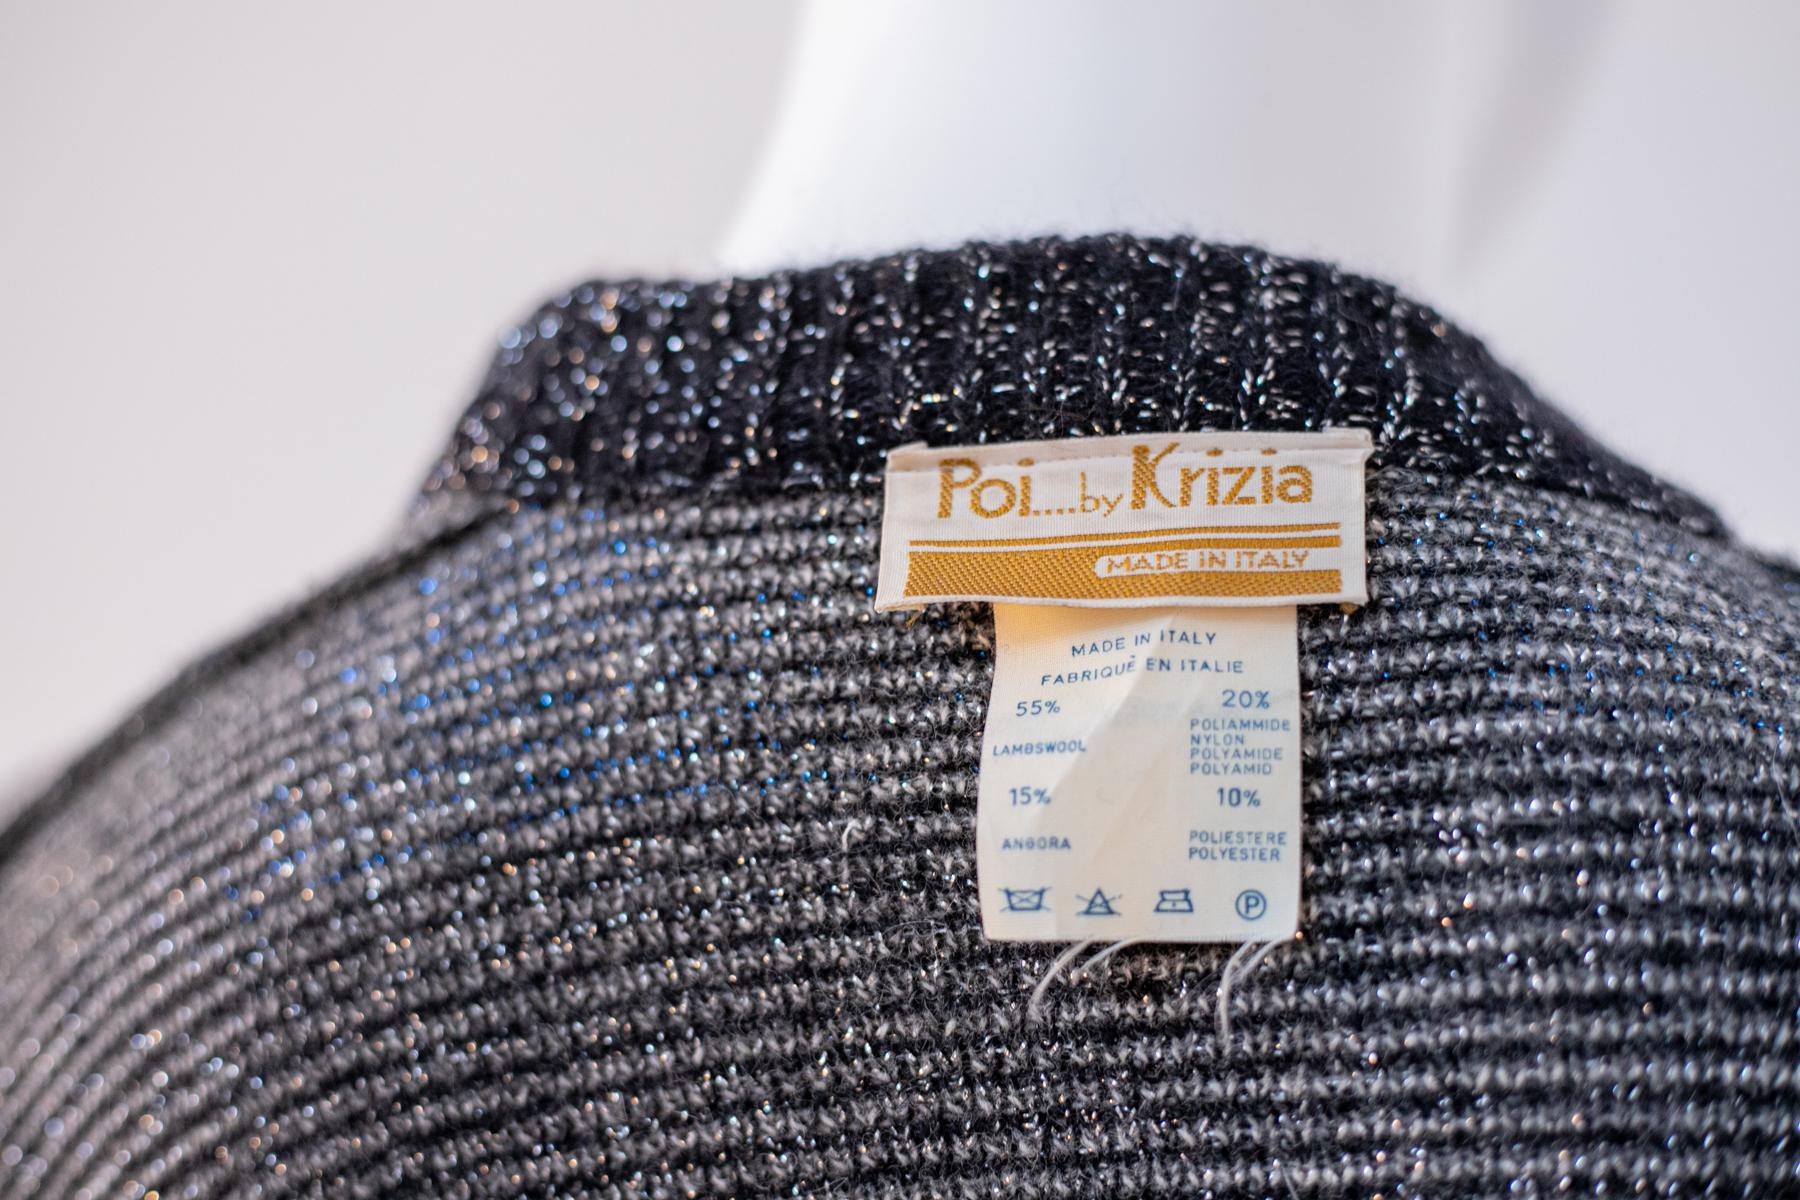 Magnifique et élégant cardigan vintage en laine conçu dans les années 1990 par Krizia, fabriqué en Italie.
Le cardigan est très simple, mais percutant. Il est entièrement réalisé en laine grise à motif de losanges, sa longueur atteint les